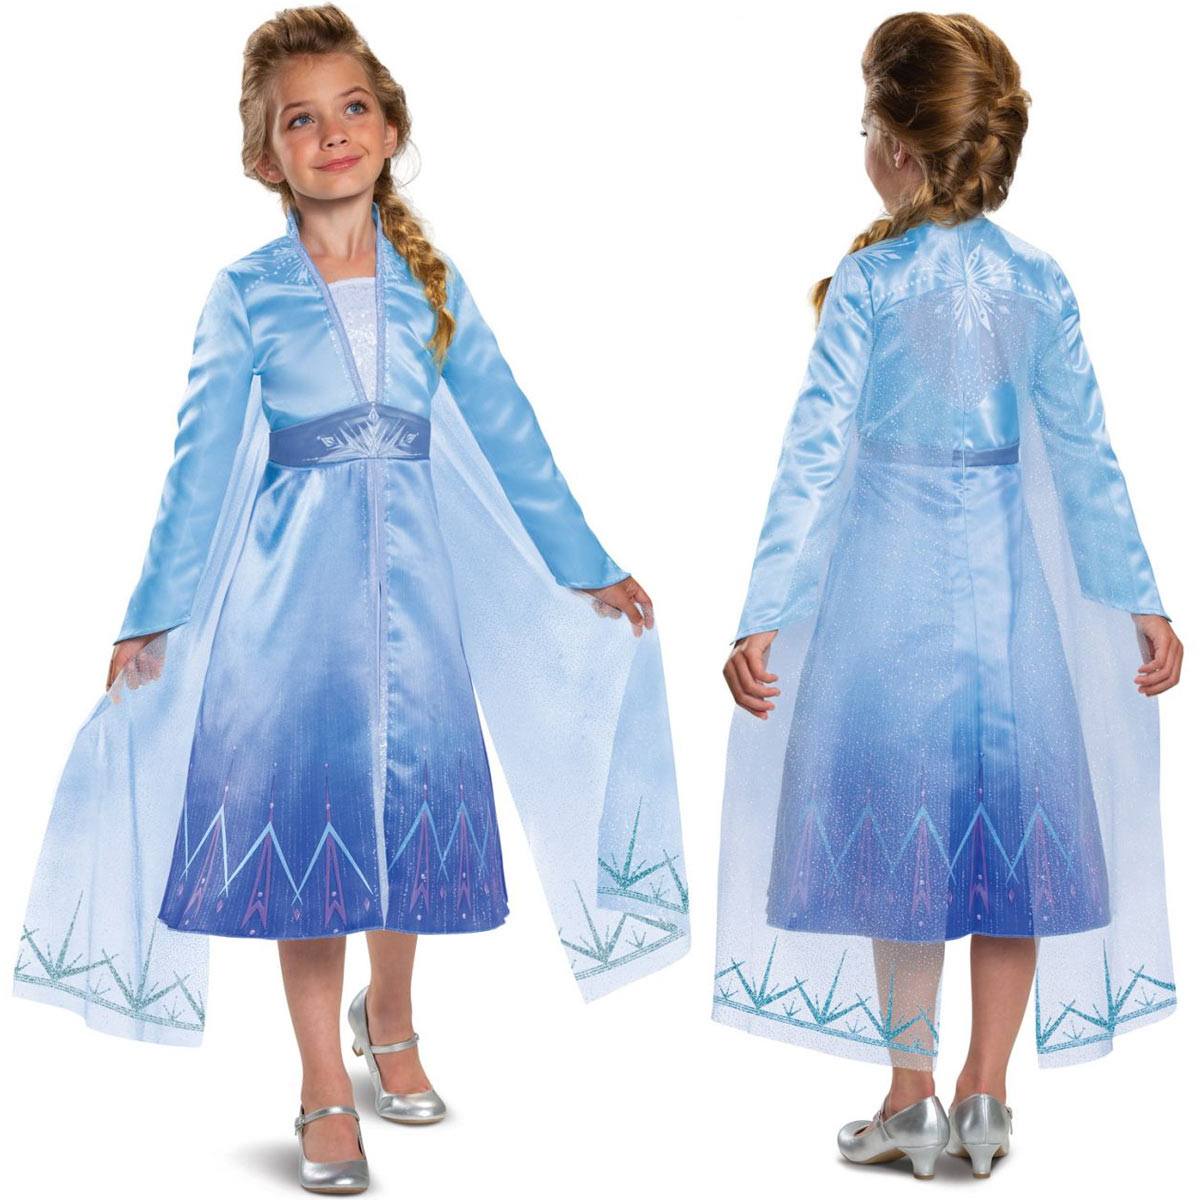 アナと雪の女王 ドレス 子供 エルサ なりきり ワンピース アナ雪 マント キッズ コスプレ 衣装 仮装 コスチューム Frozen